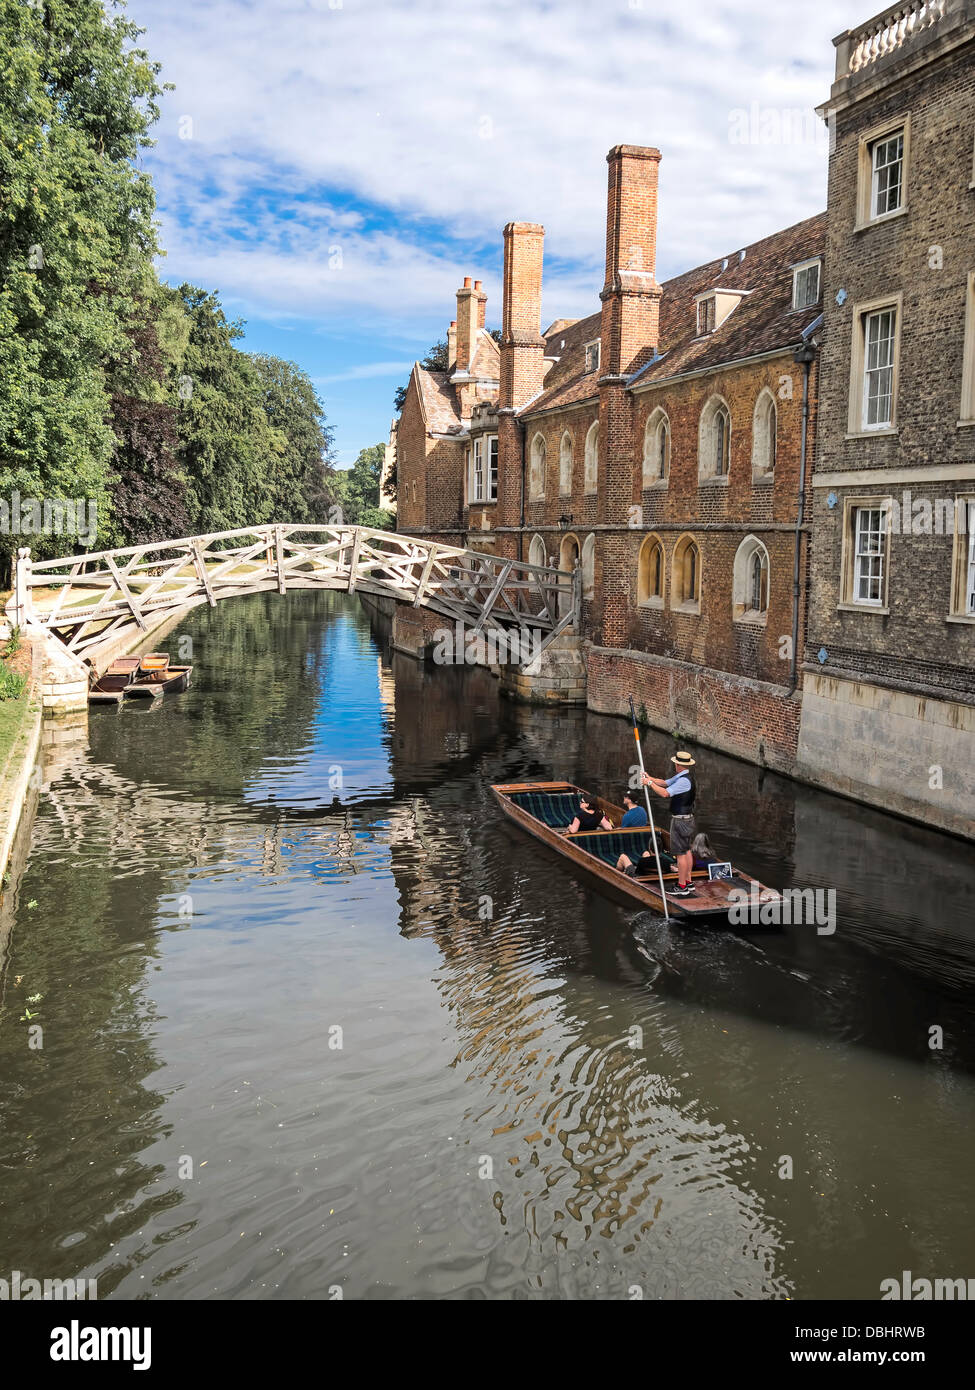 Plates alignées sur la rivière à Cambridge en Angleterre Banque D'Images